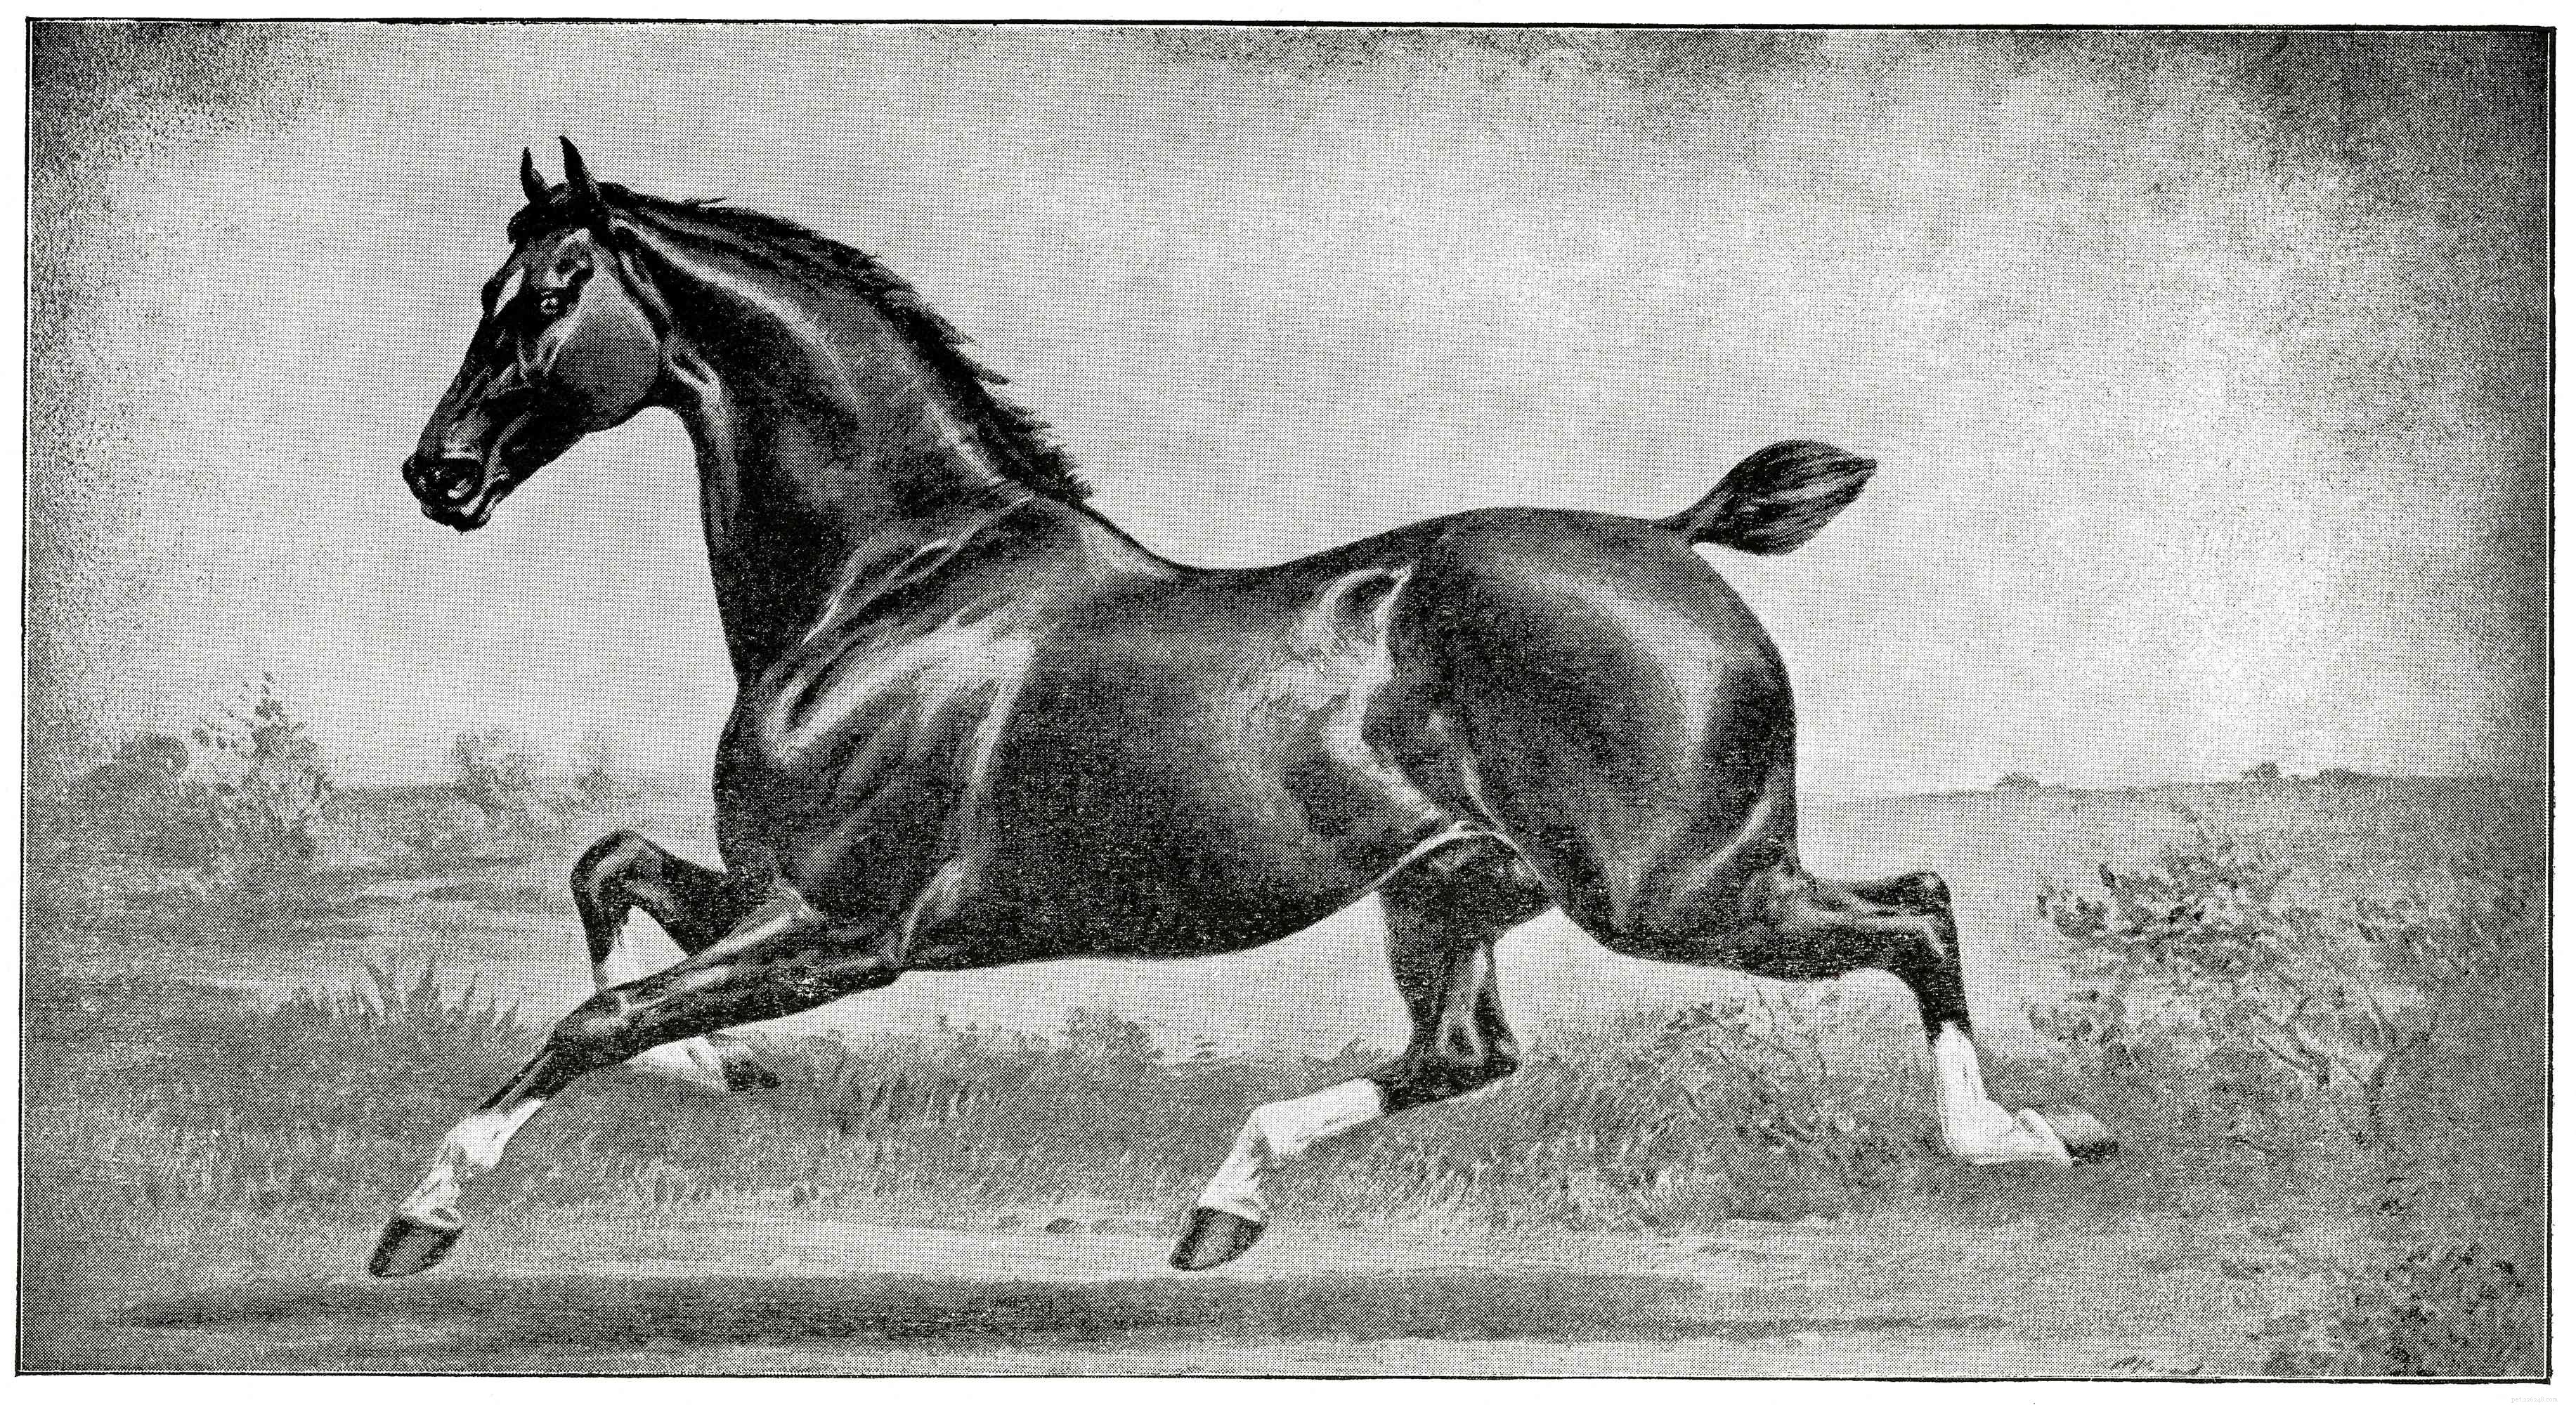 Hackney:Profil plemene koně